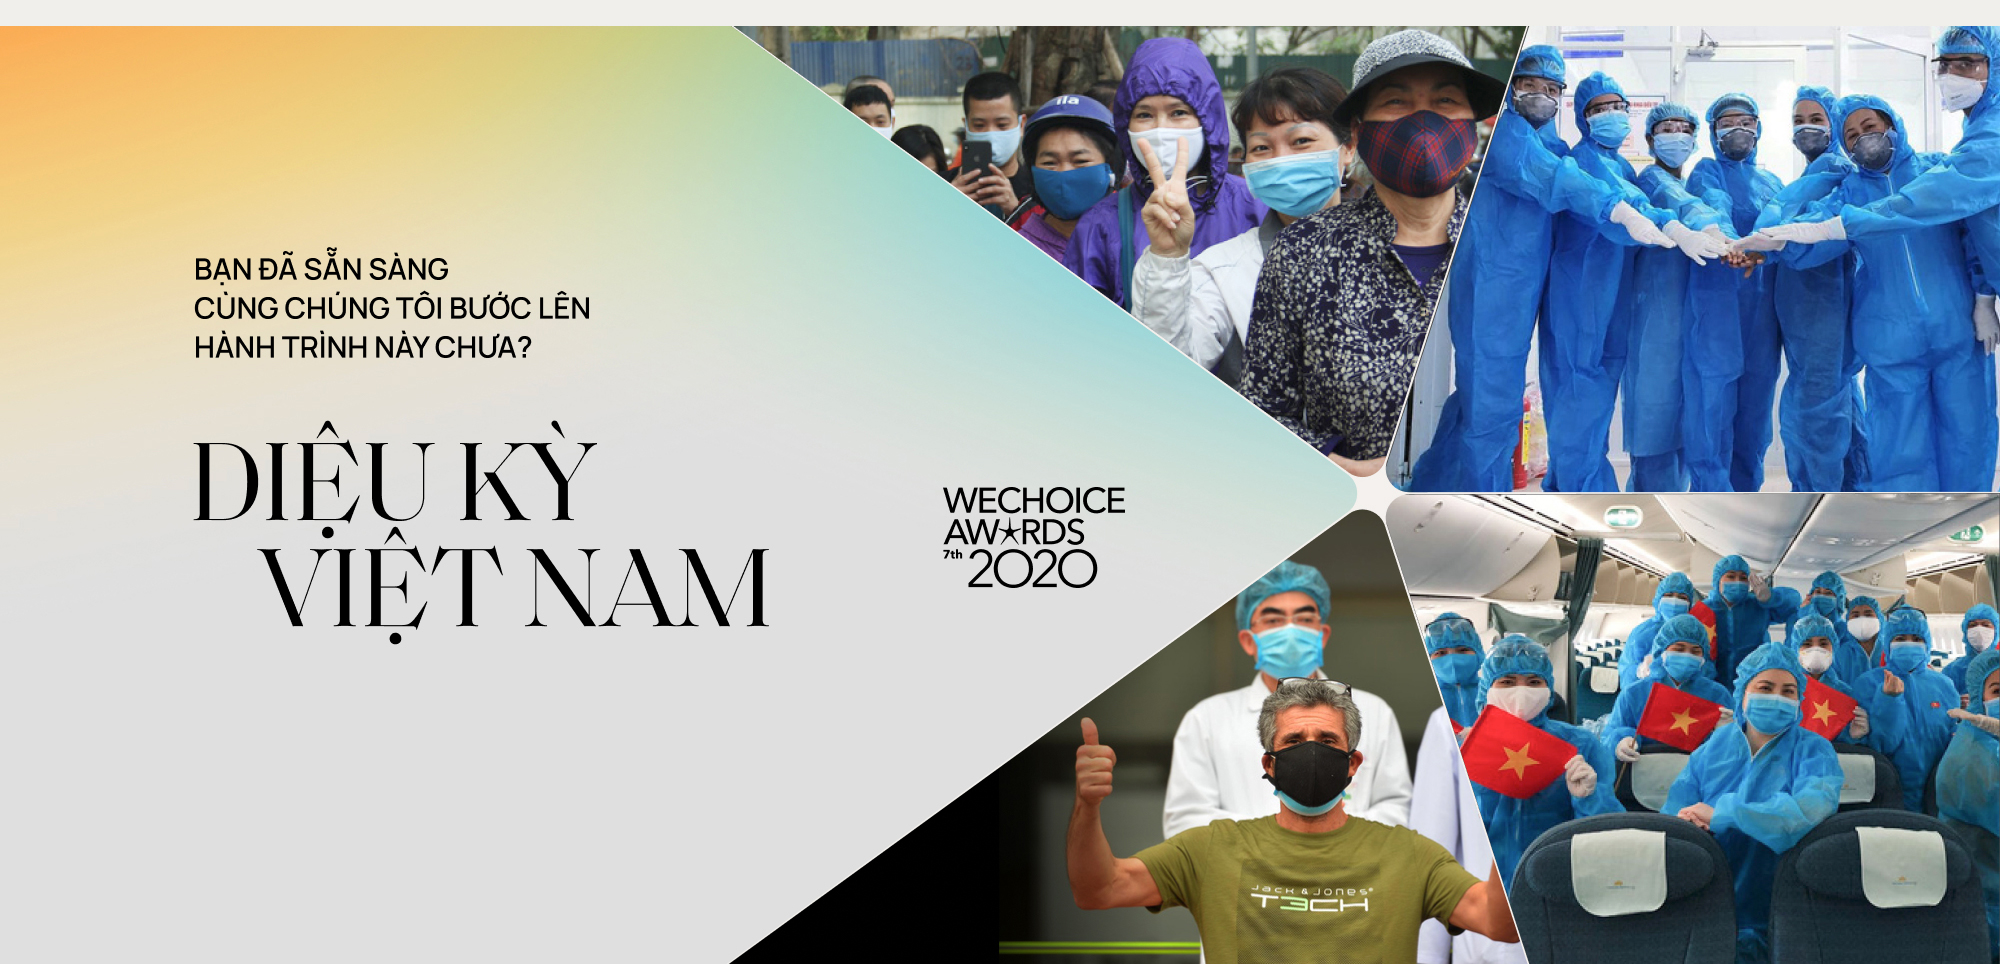 WeChoice Awards 2020: Diệu kỳ Việt Nam - khi phép màu đến từ những điều giản đơn nhất - Ảnh 14.